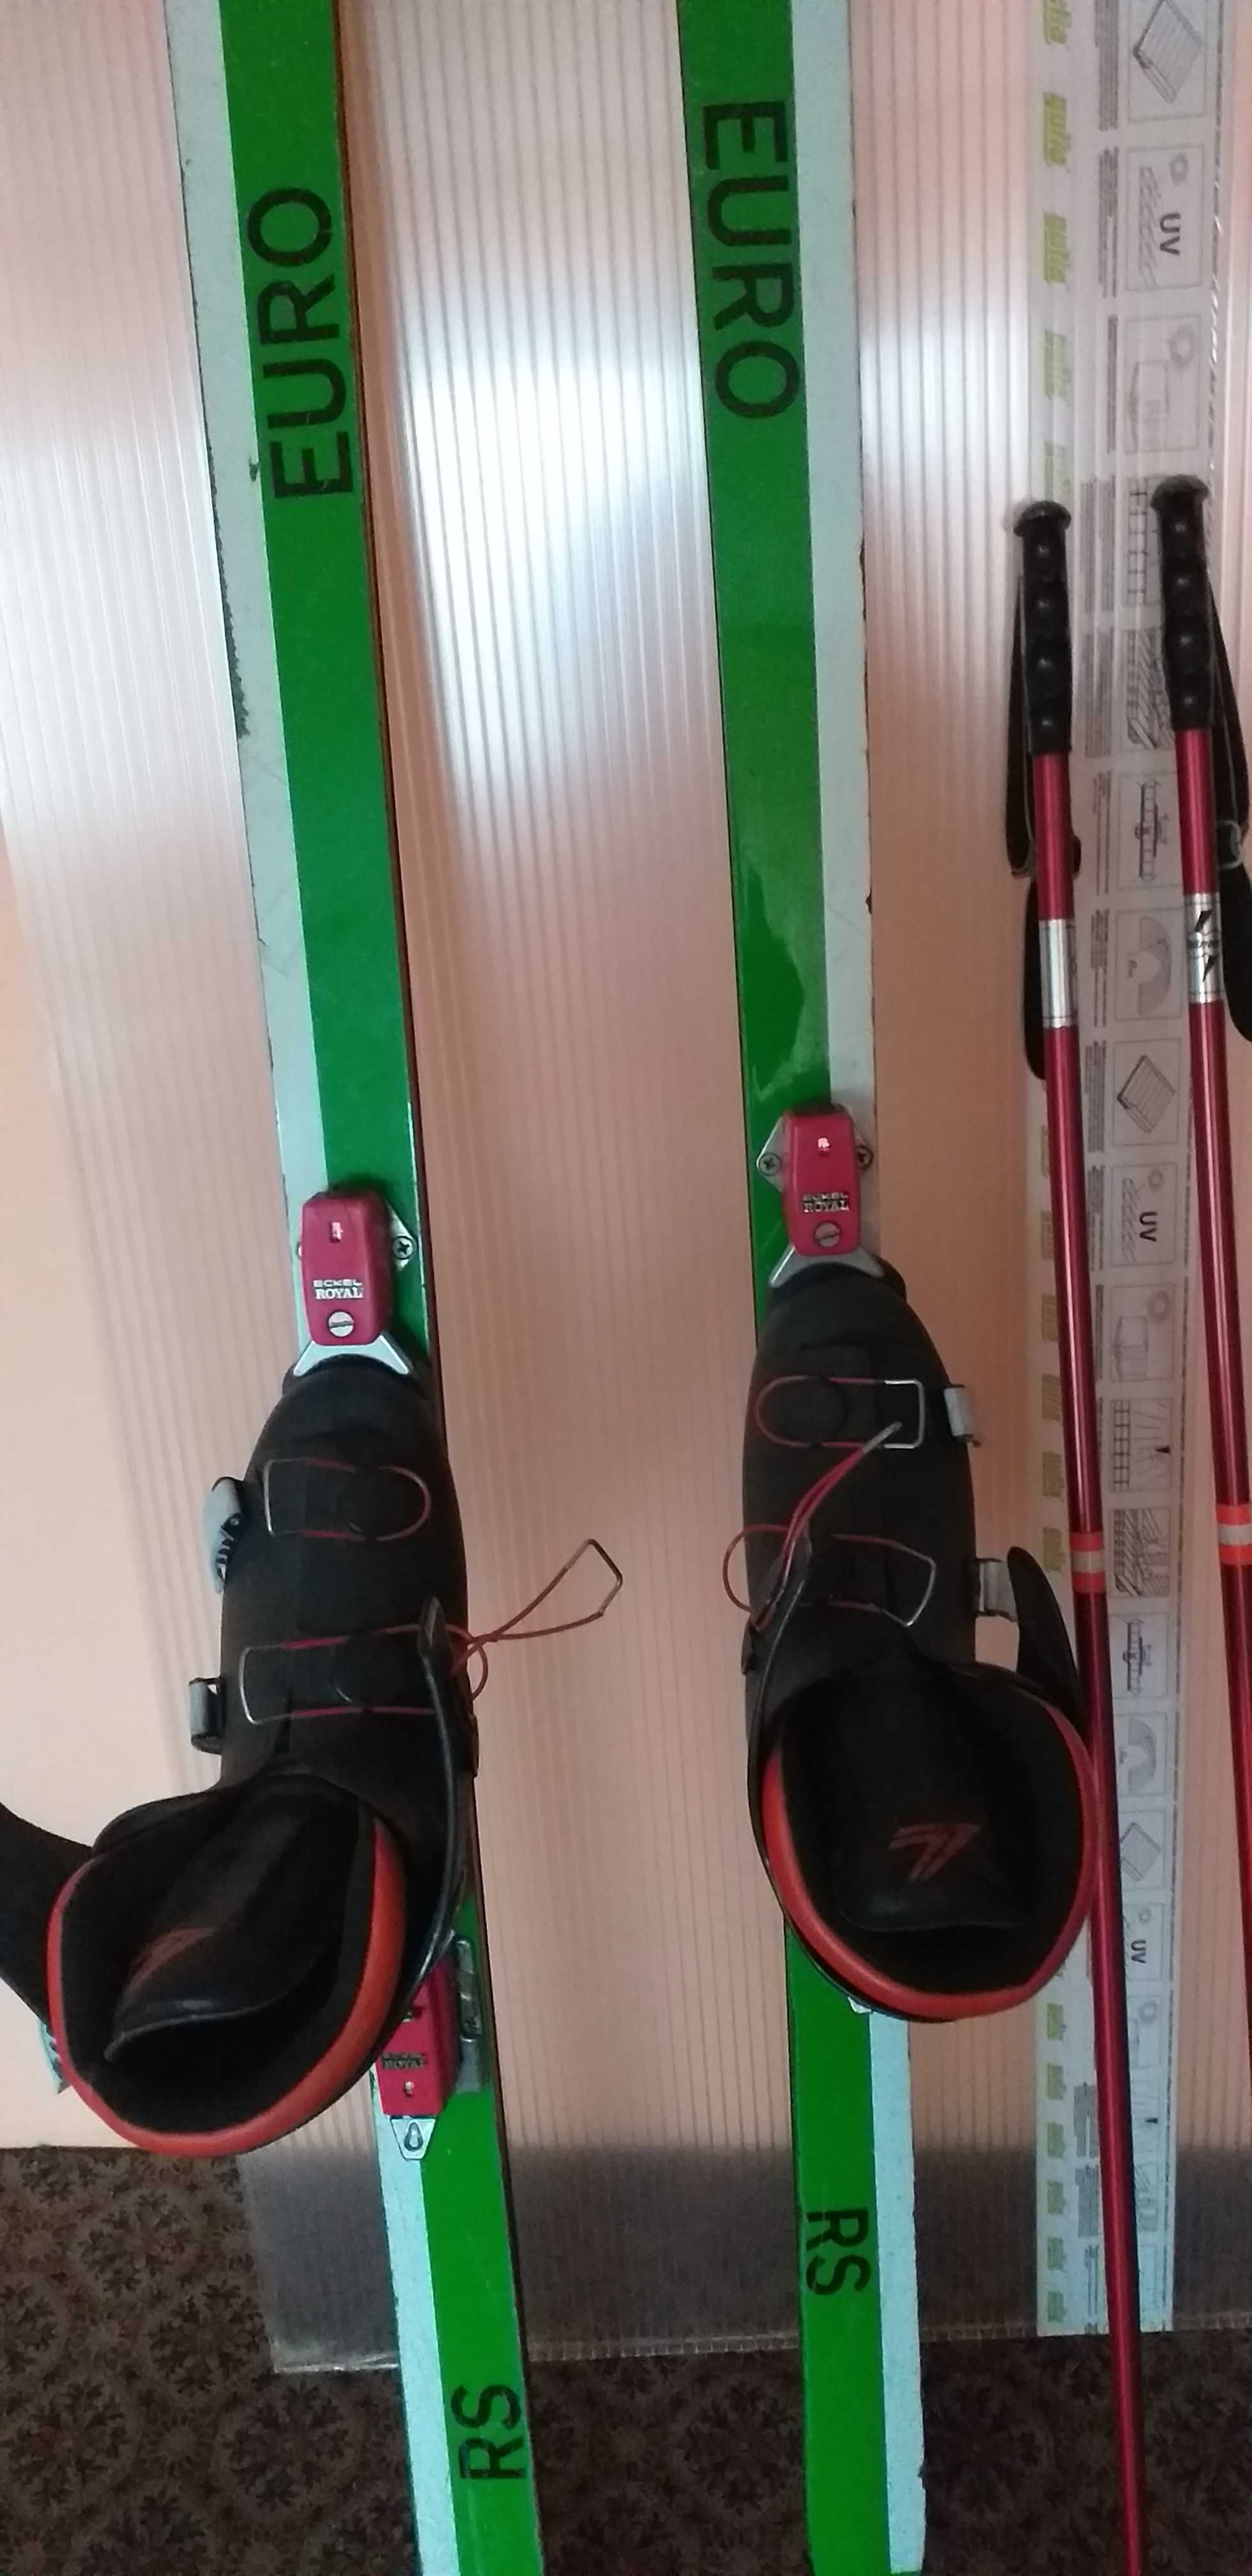 Kolekcjonerskie narty zjazdowe 180cm